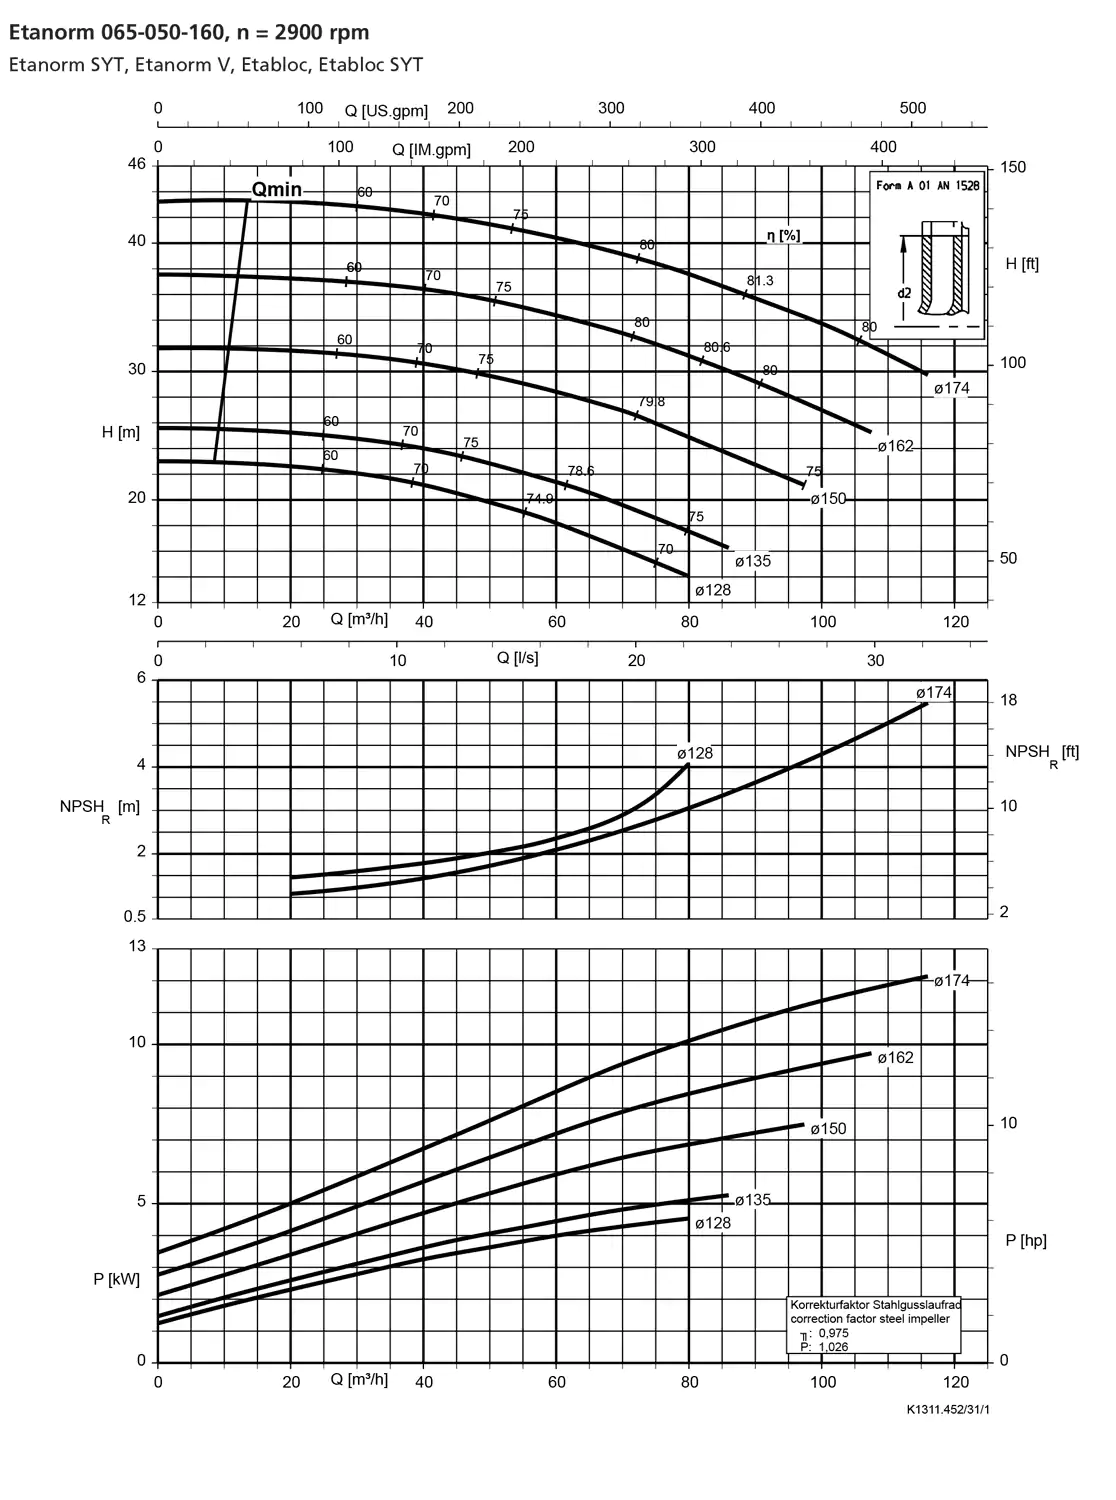 نمودار-کارکرد-پمپ-etanorm-65-050-160-2900